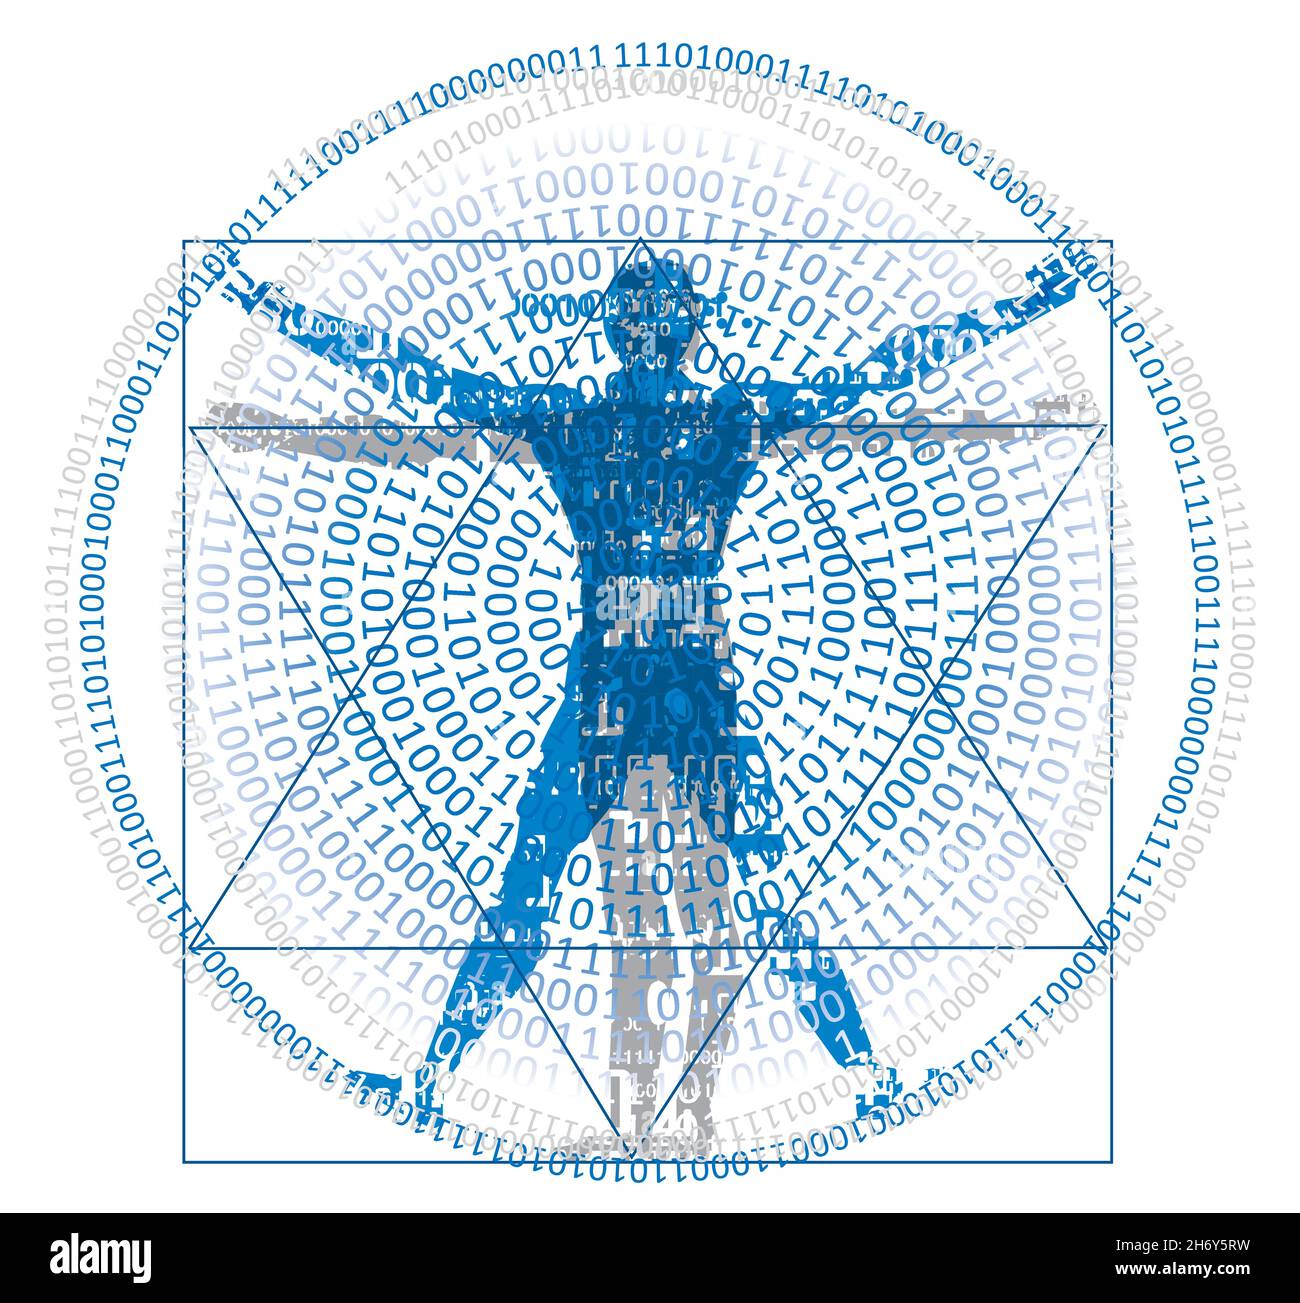 Uomo vitruviano con codice binario, concetto di età digitale.disegno stilizzato di uomo vitruviano con spirale di codici binari,sfondo bianco.Vector disponibile Illustrazione Vettoriale